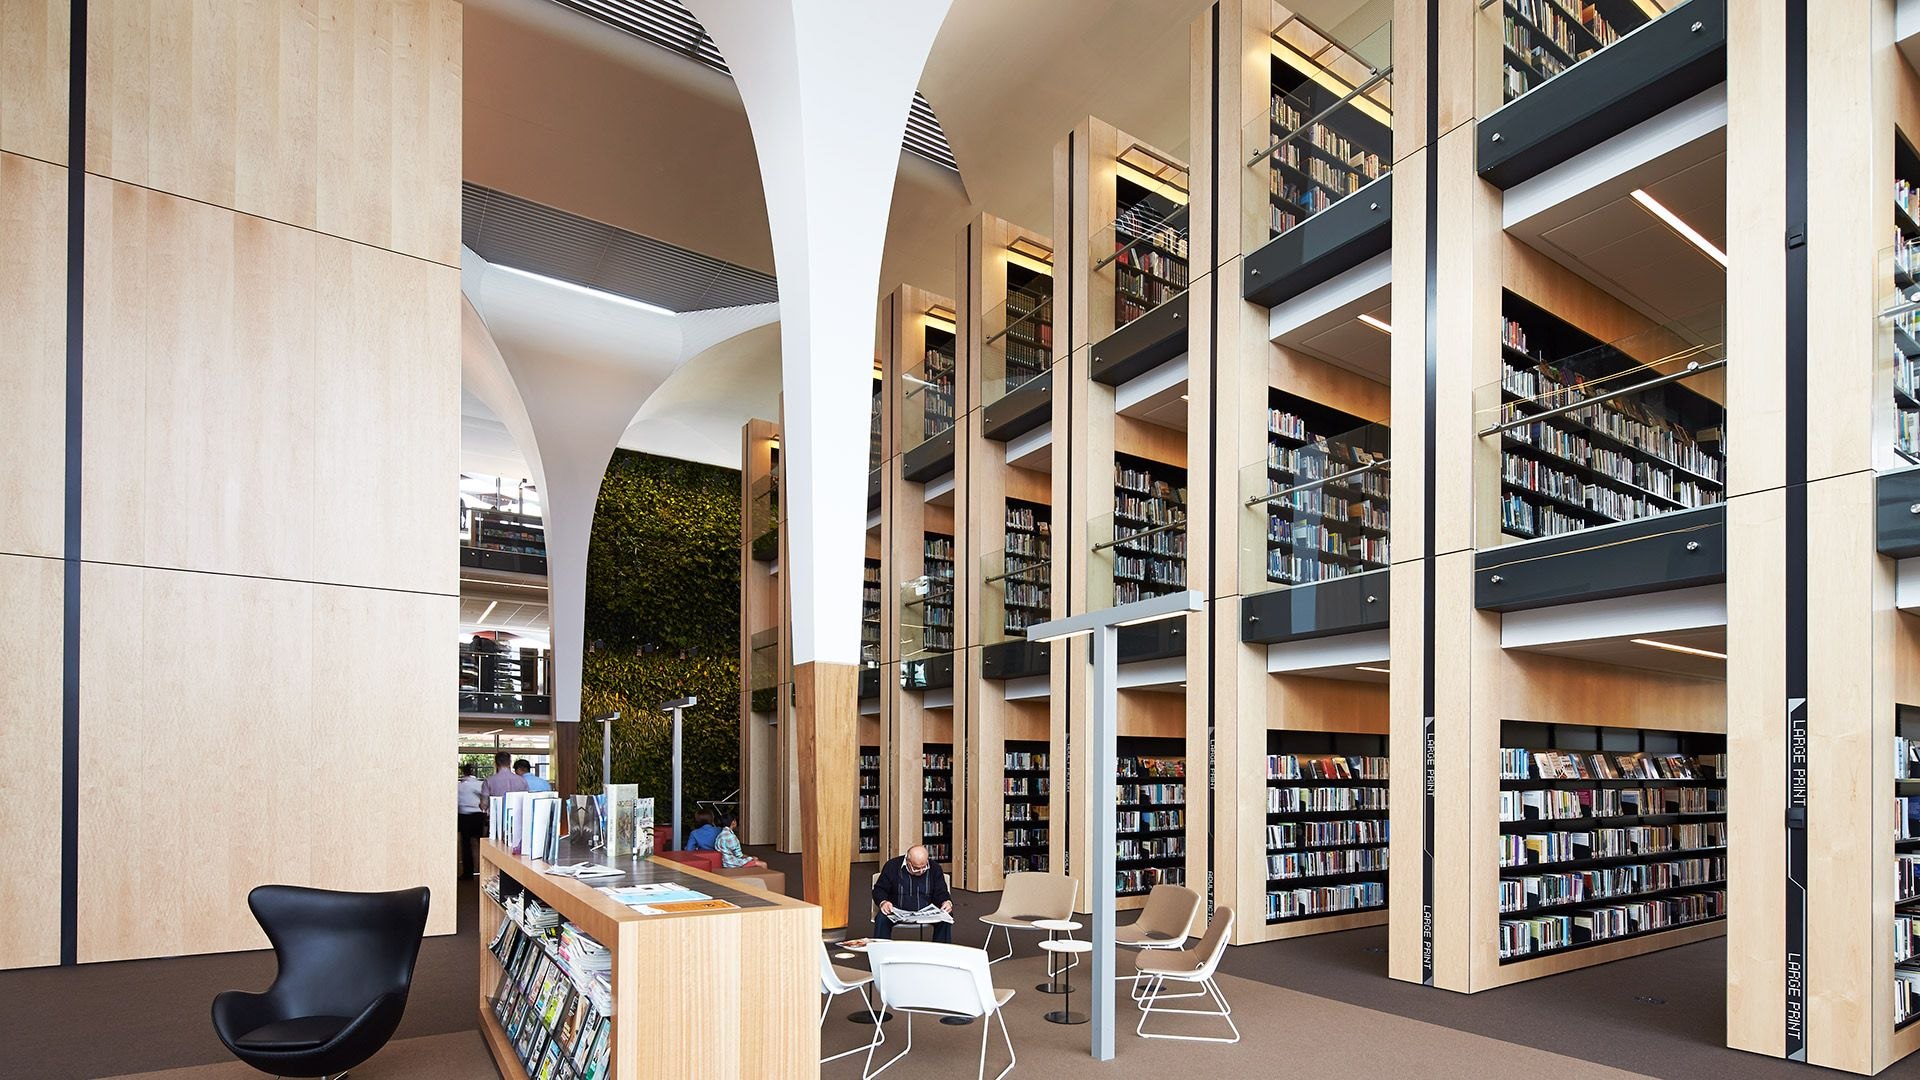 Platform library. Центральная библиотека Лос-Анджелеса внутри. Интерьер современной библиотеки. Интерьер библиотеки публичной. Интерьер общественной библиотеки.